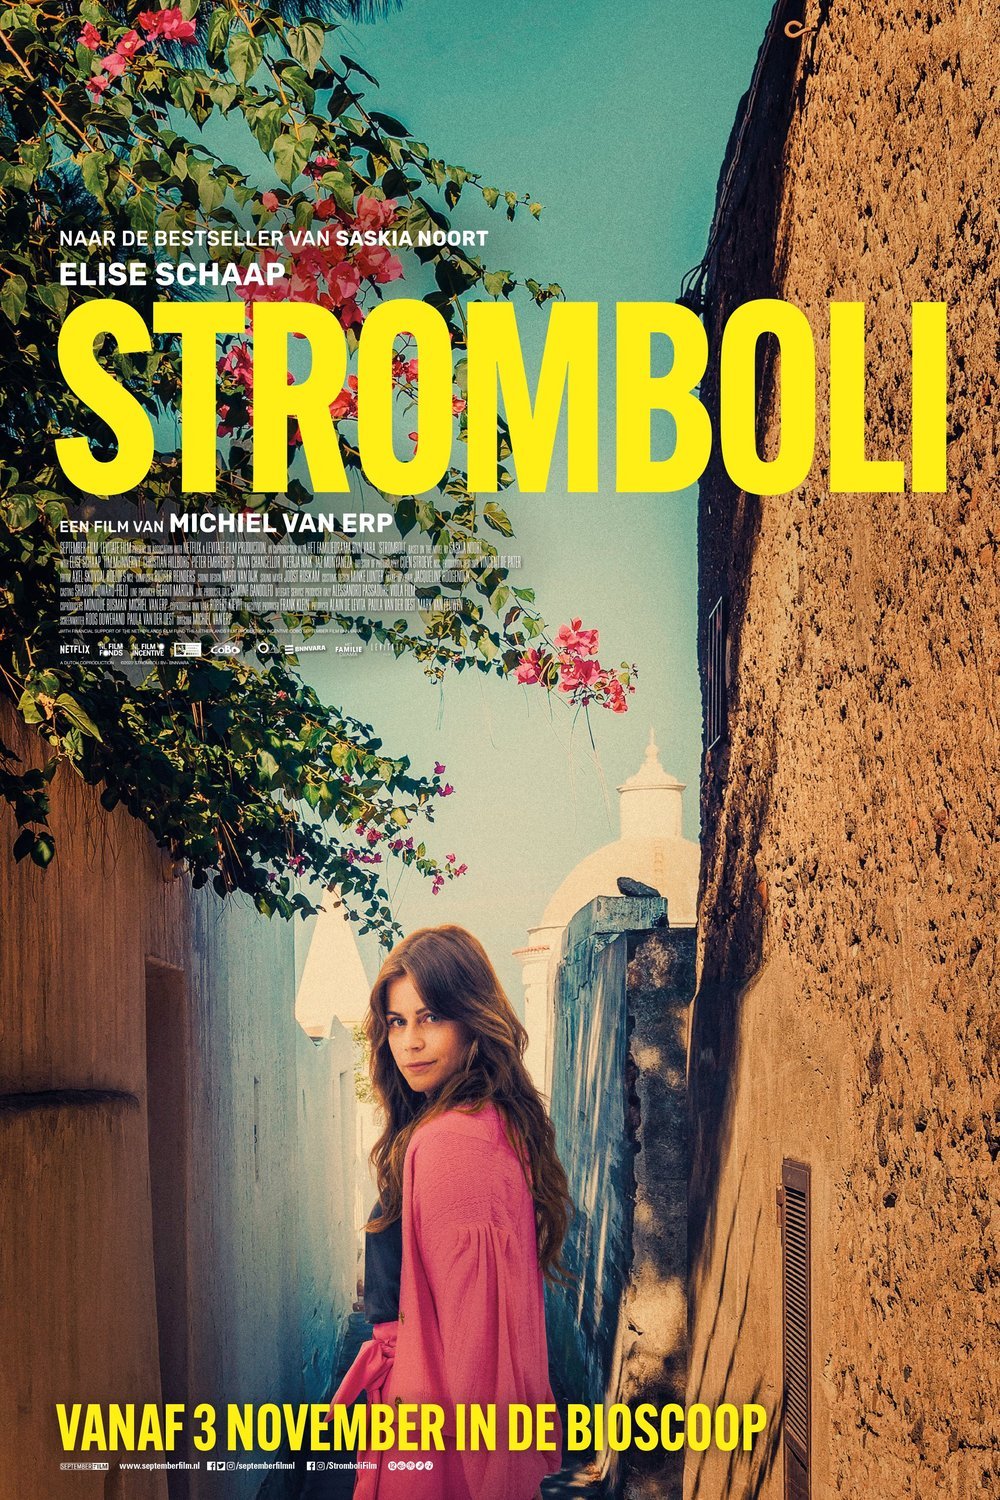 L'affiche originale du film Stromboli en Néerlandais